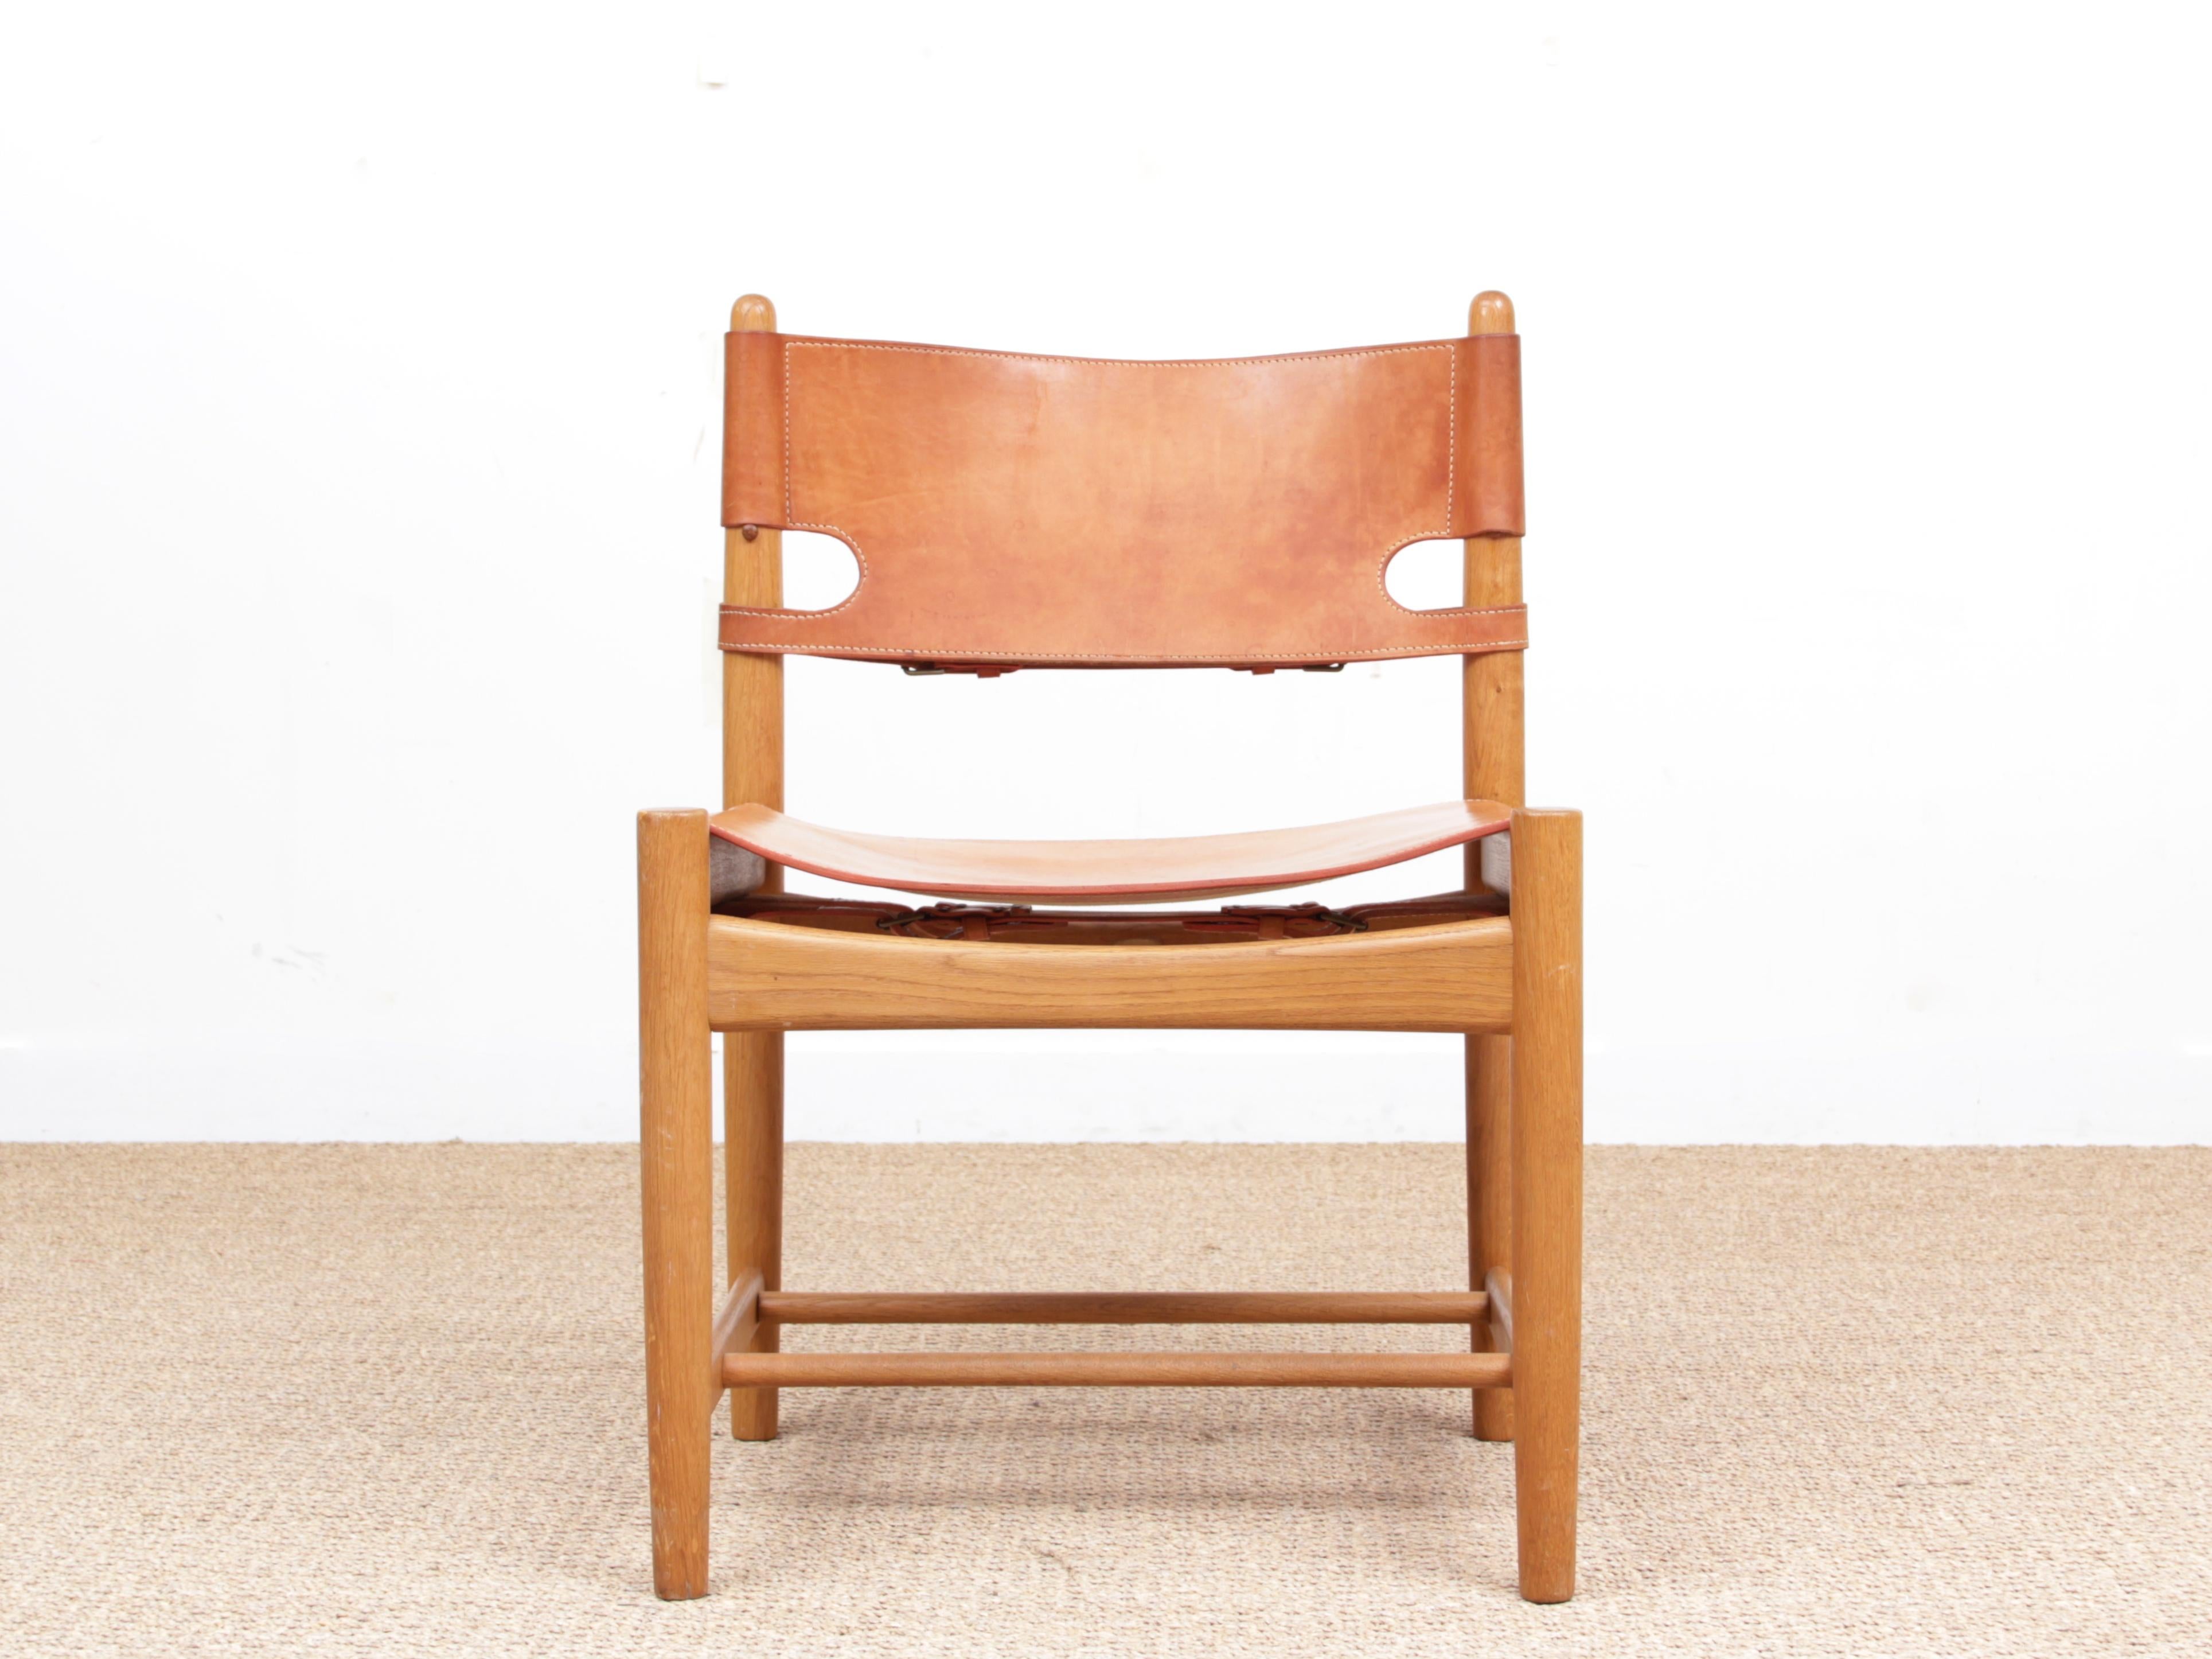 Ensemble de 4 chaises scandinaves modernes du milieu du siècle par Borge Mogensen modèle 3237 pour Fredericia Furniture. Chêne massif laqué et cuir. Pièce achetée en 1970. Initialement produit par l'ébéniste Erhard Rasmussen, il a ensuite été